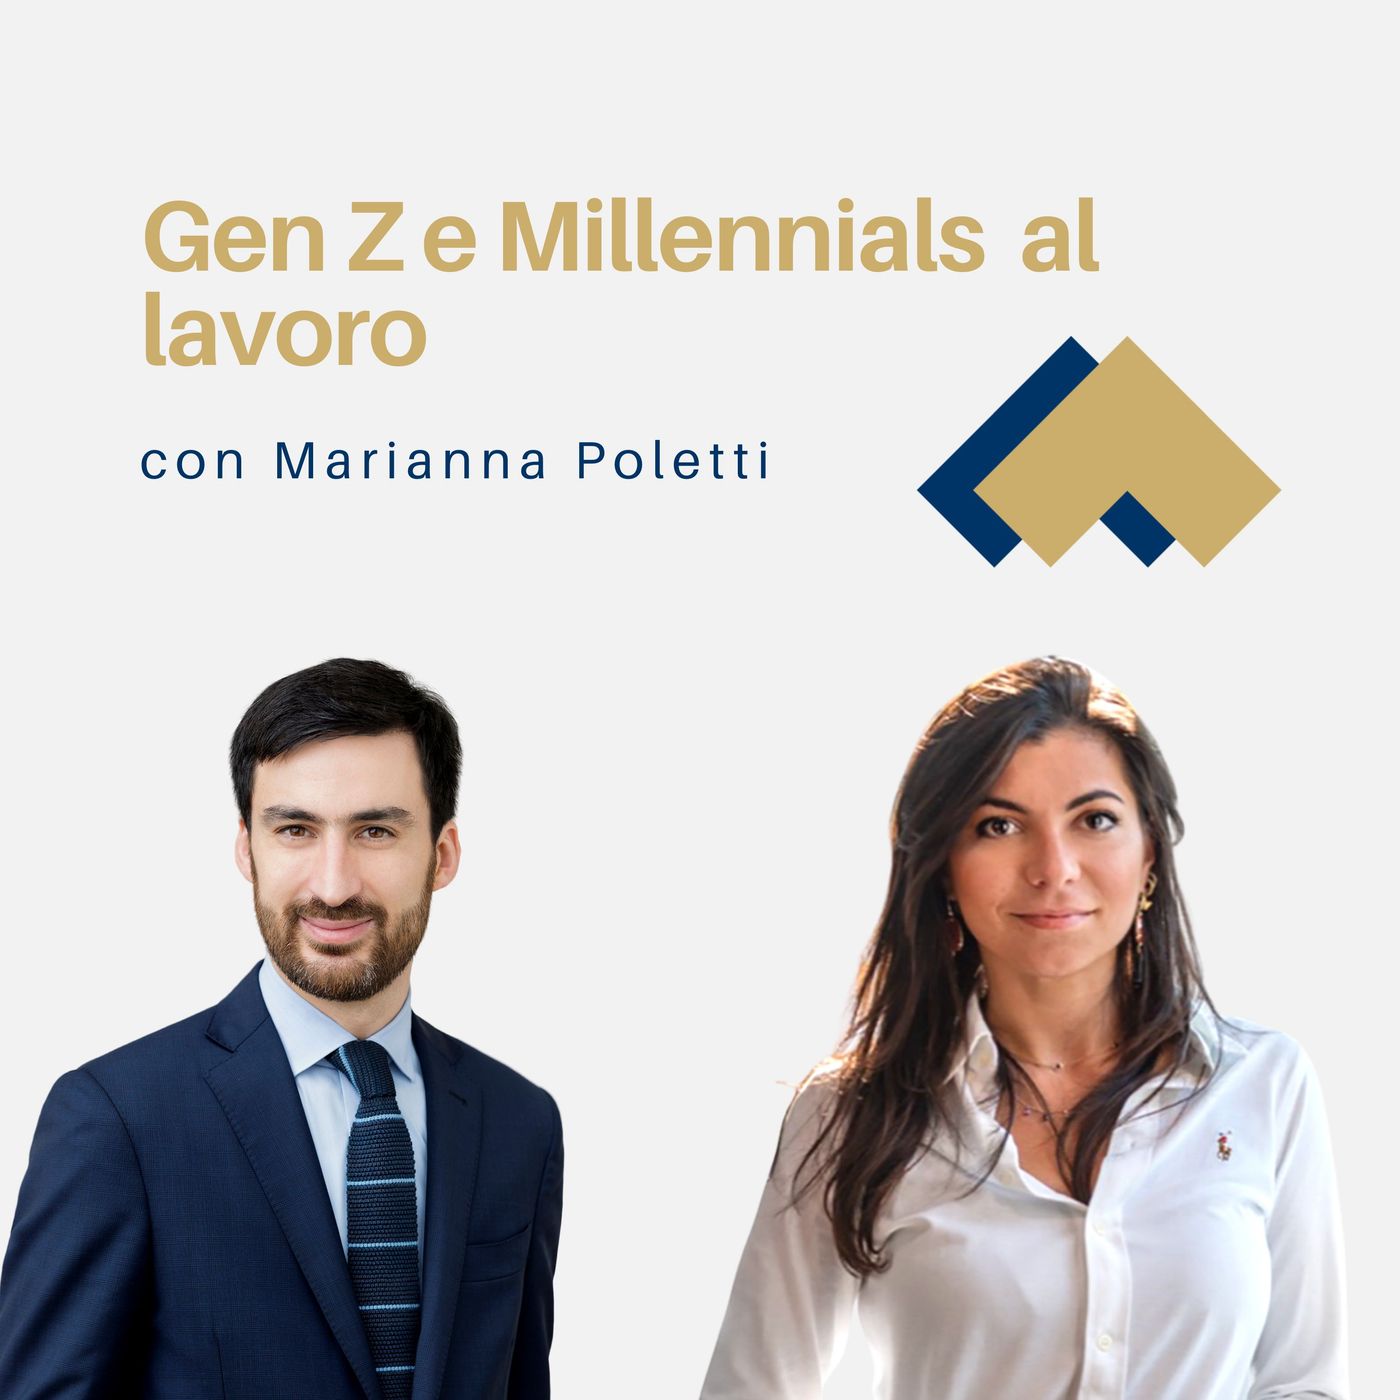 072 - Gen Z e Millennials al lavoro con Marianna Poletti